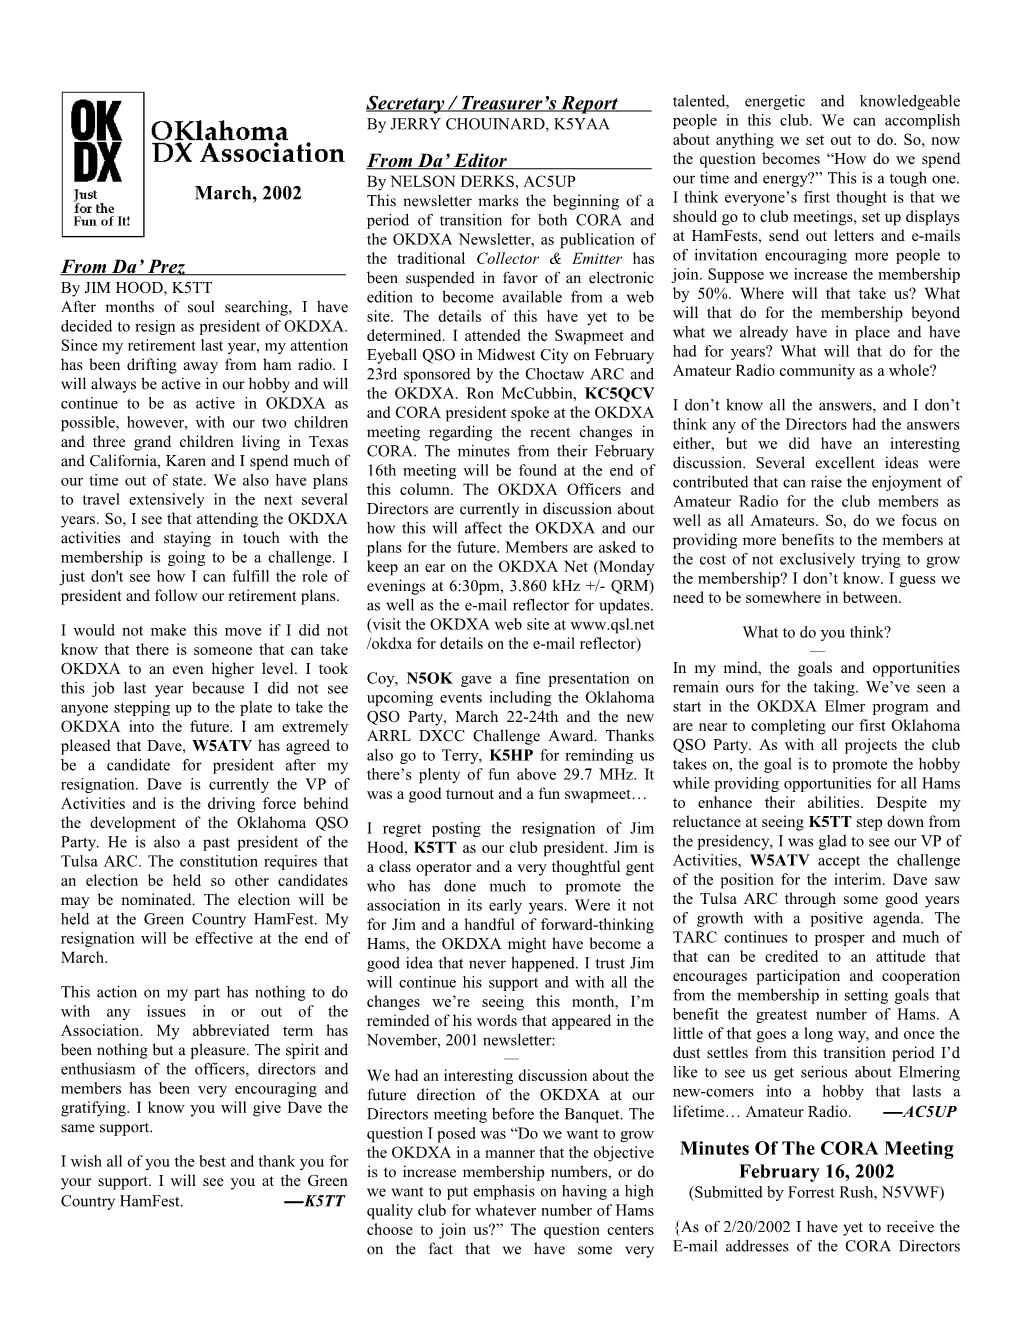 OKDXA Newsletter for March 2002